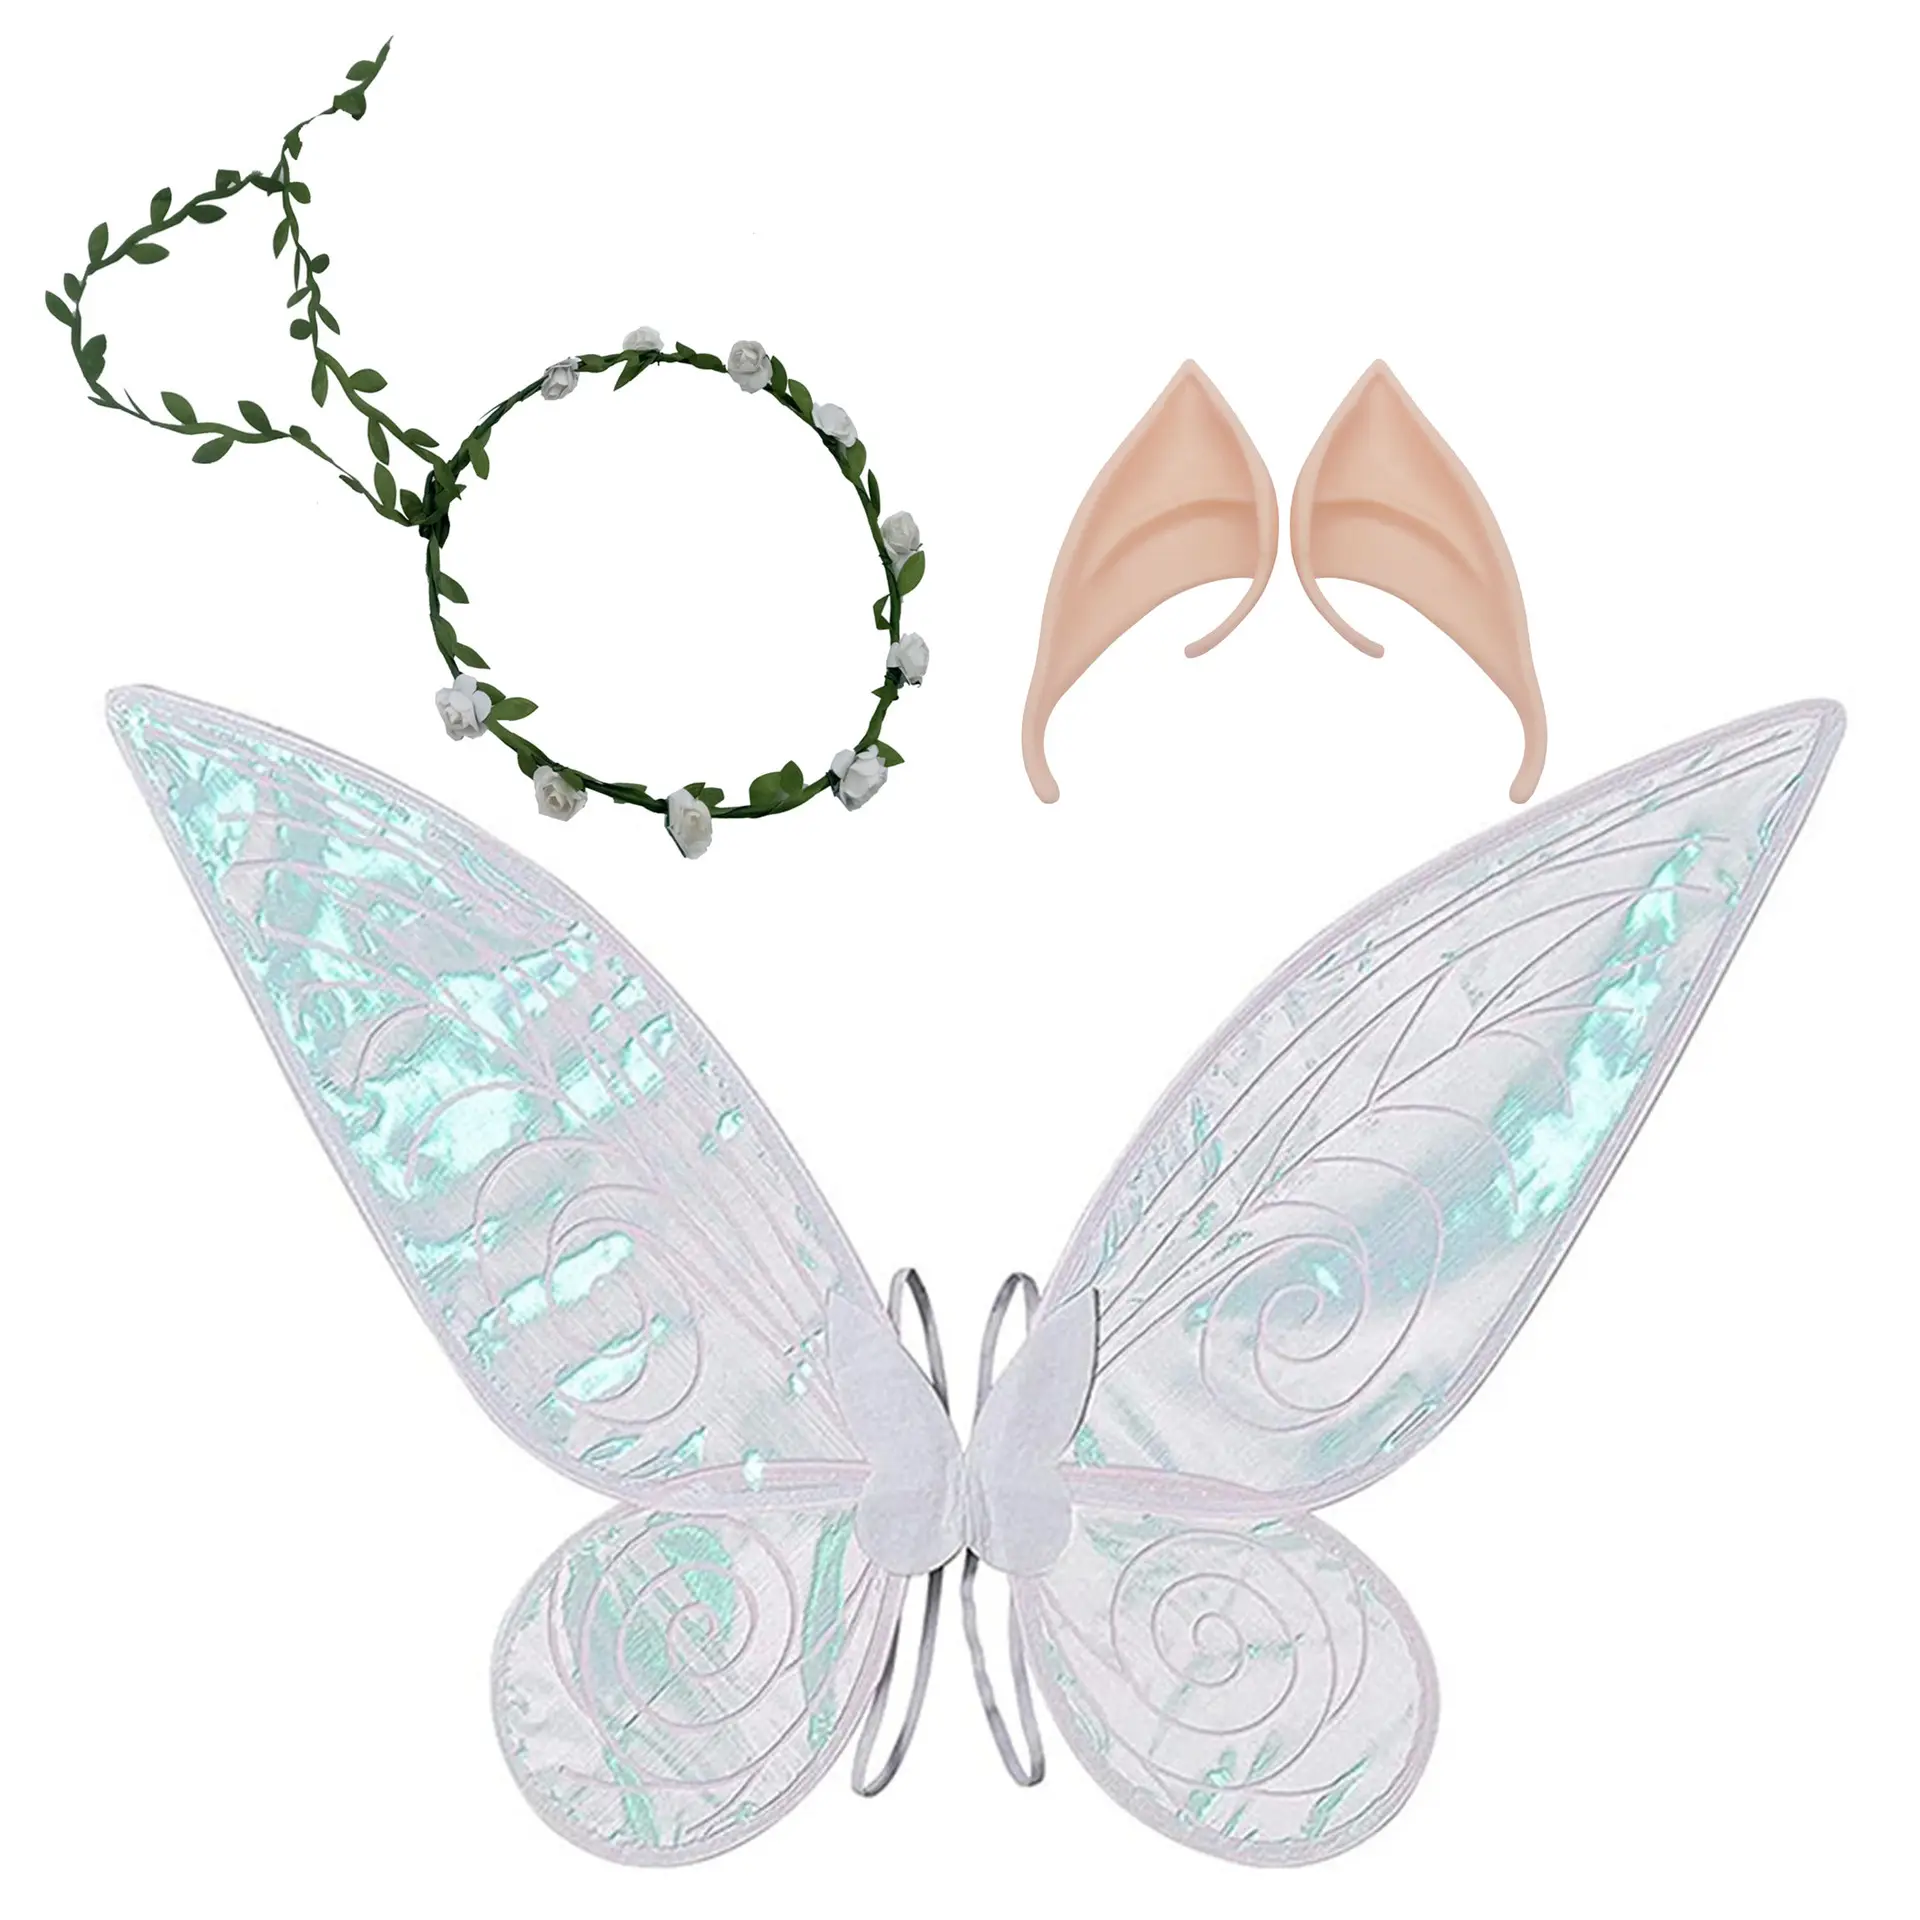 Новый Набор крыльев Ангела бабочки Хэллоуин эльф ухо Принцесса Фея Вечеринка нарядный фестиваль реквизит для выступления